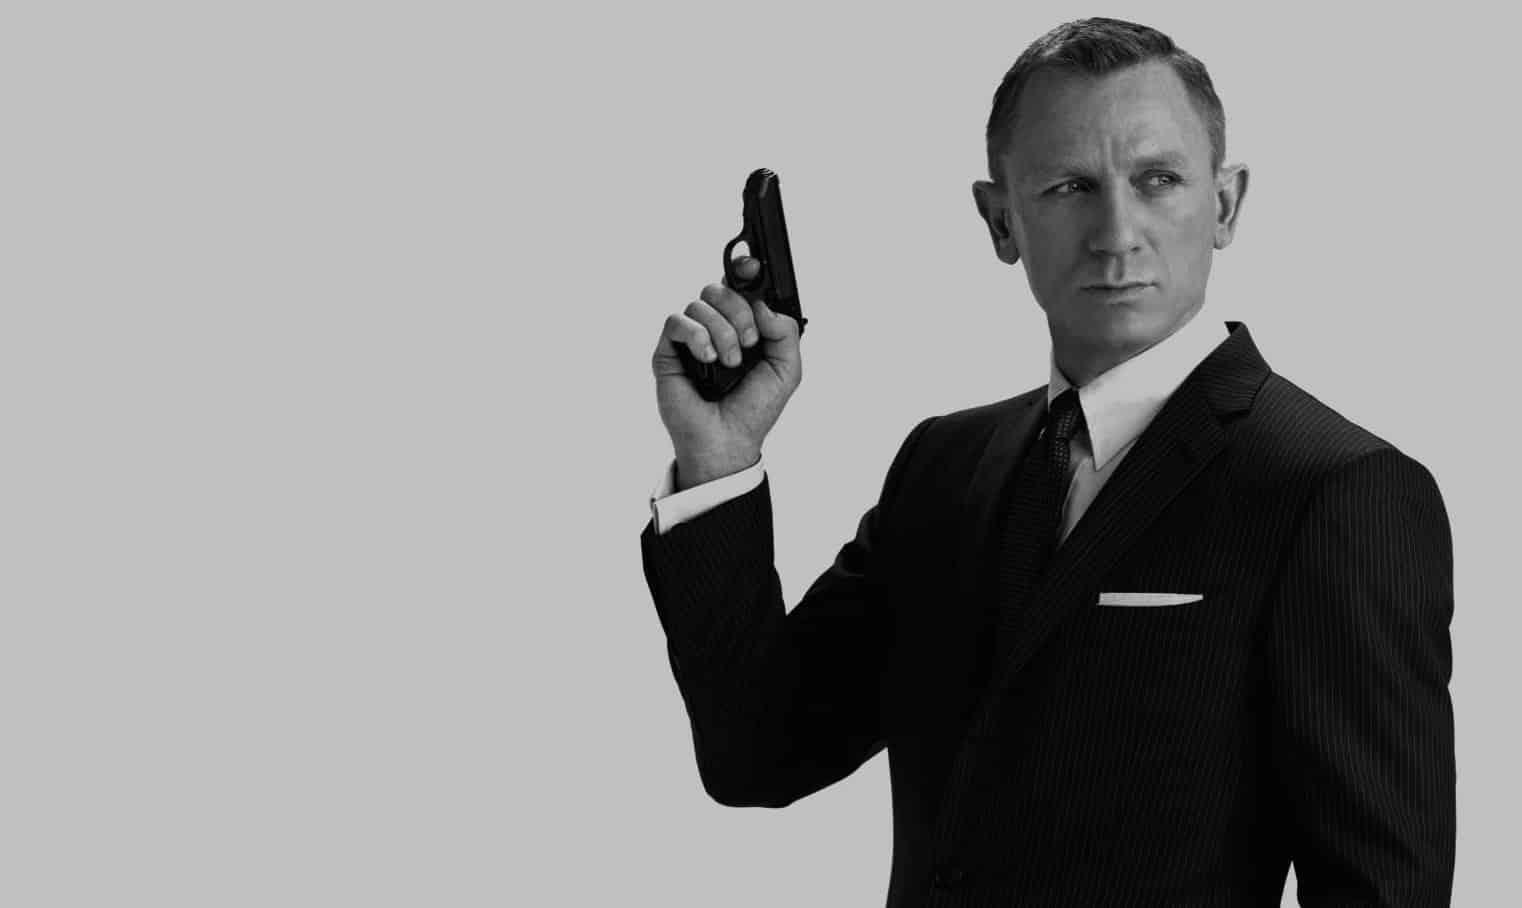 “James Bond non sarà mai donna”, ha dichiarato la produttrice